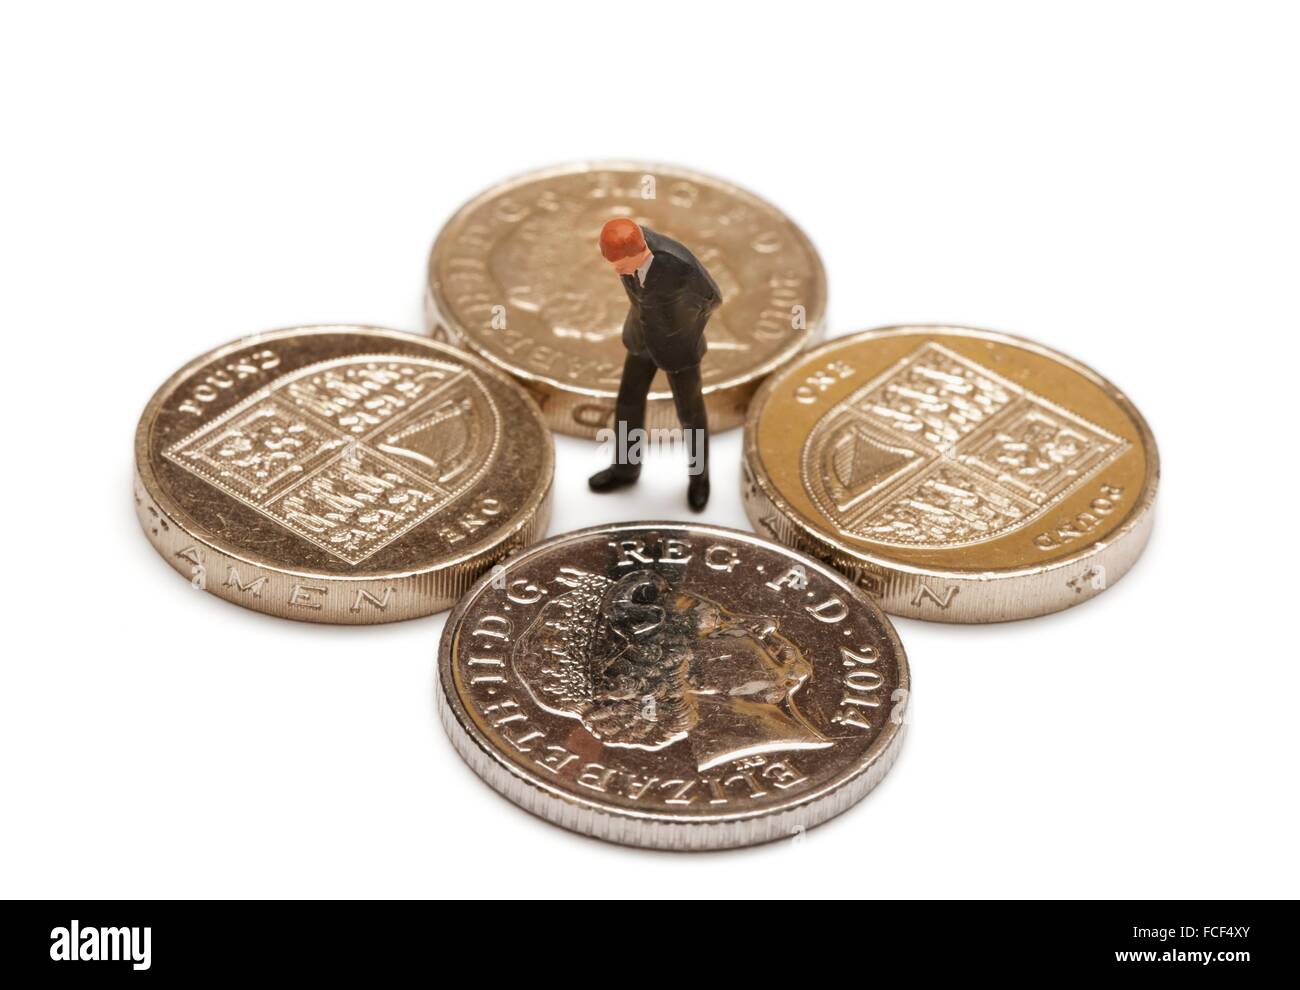 Une figurine miniature homme en costume à la recherche d'une livre des pièces de monnaie et une pièce de 10 pence Banque D'Images